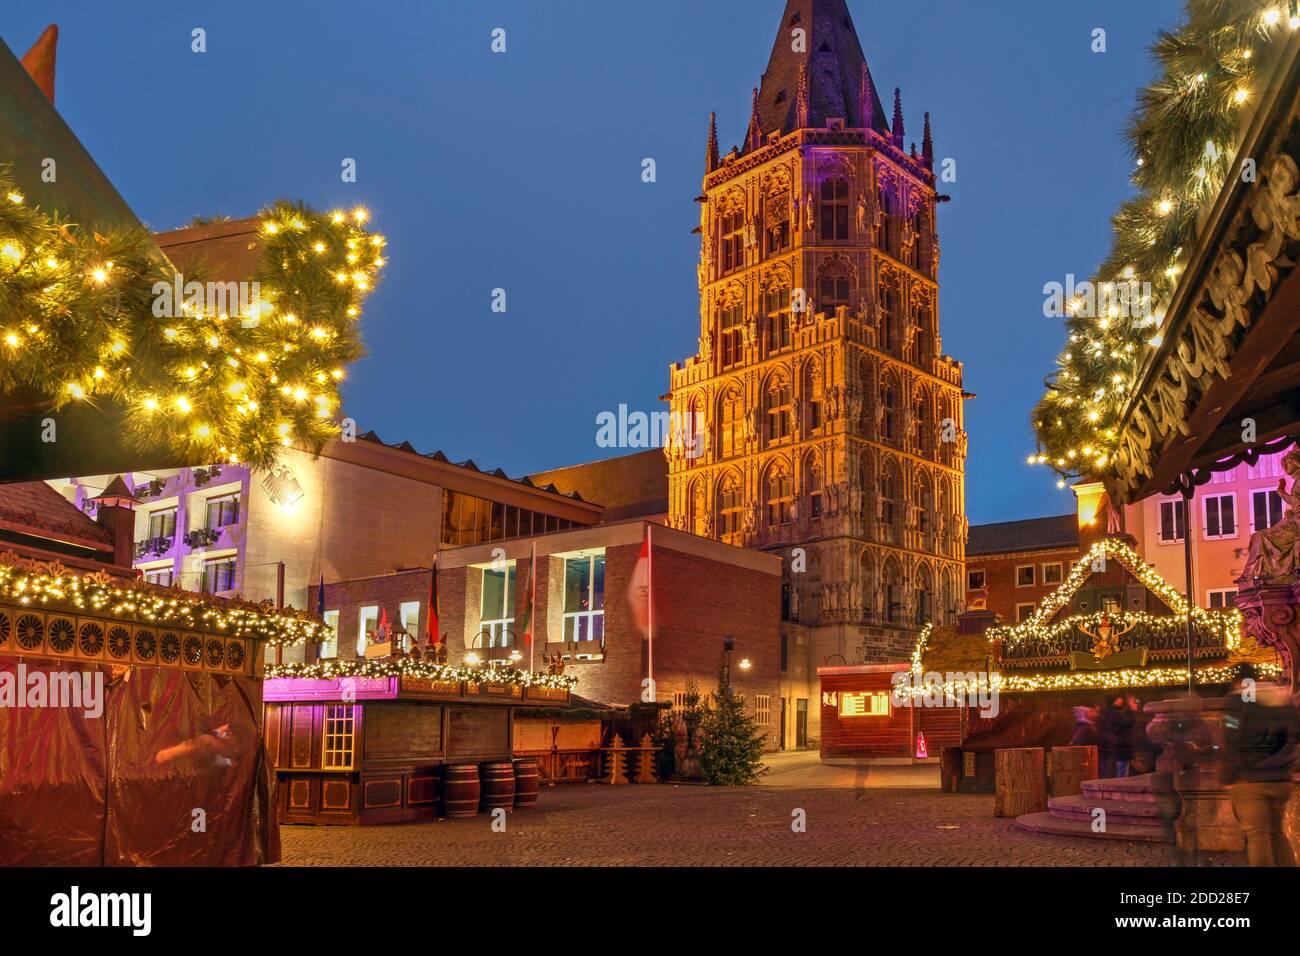 Scène nocturne à Rathausplatz à Cologne, en Allemagne pendant les fêtes, avec le marché de Noël et la tour de l'hôtel de ville. Banque D'Images